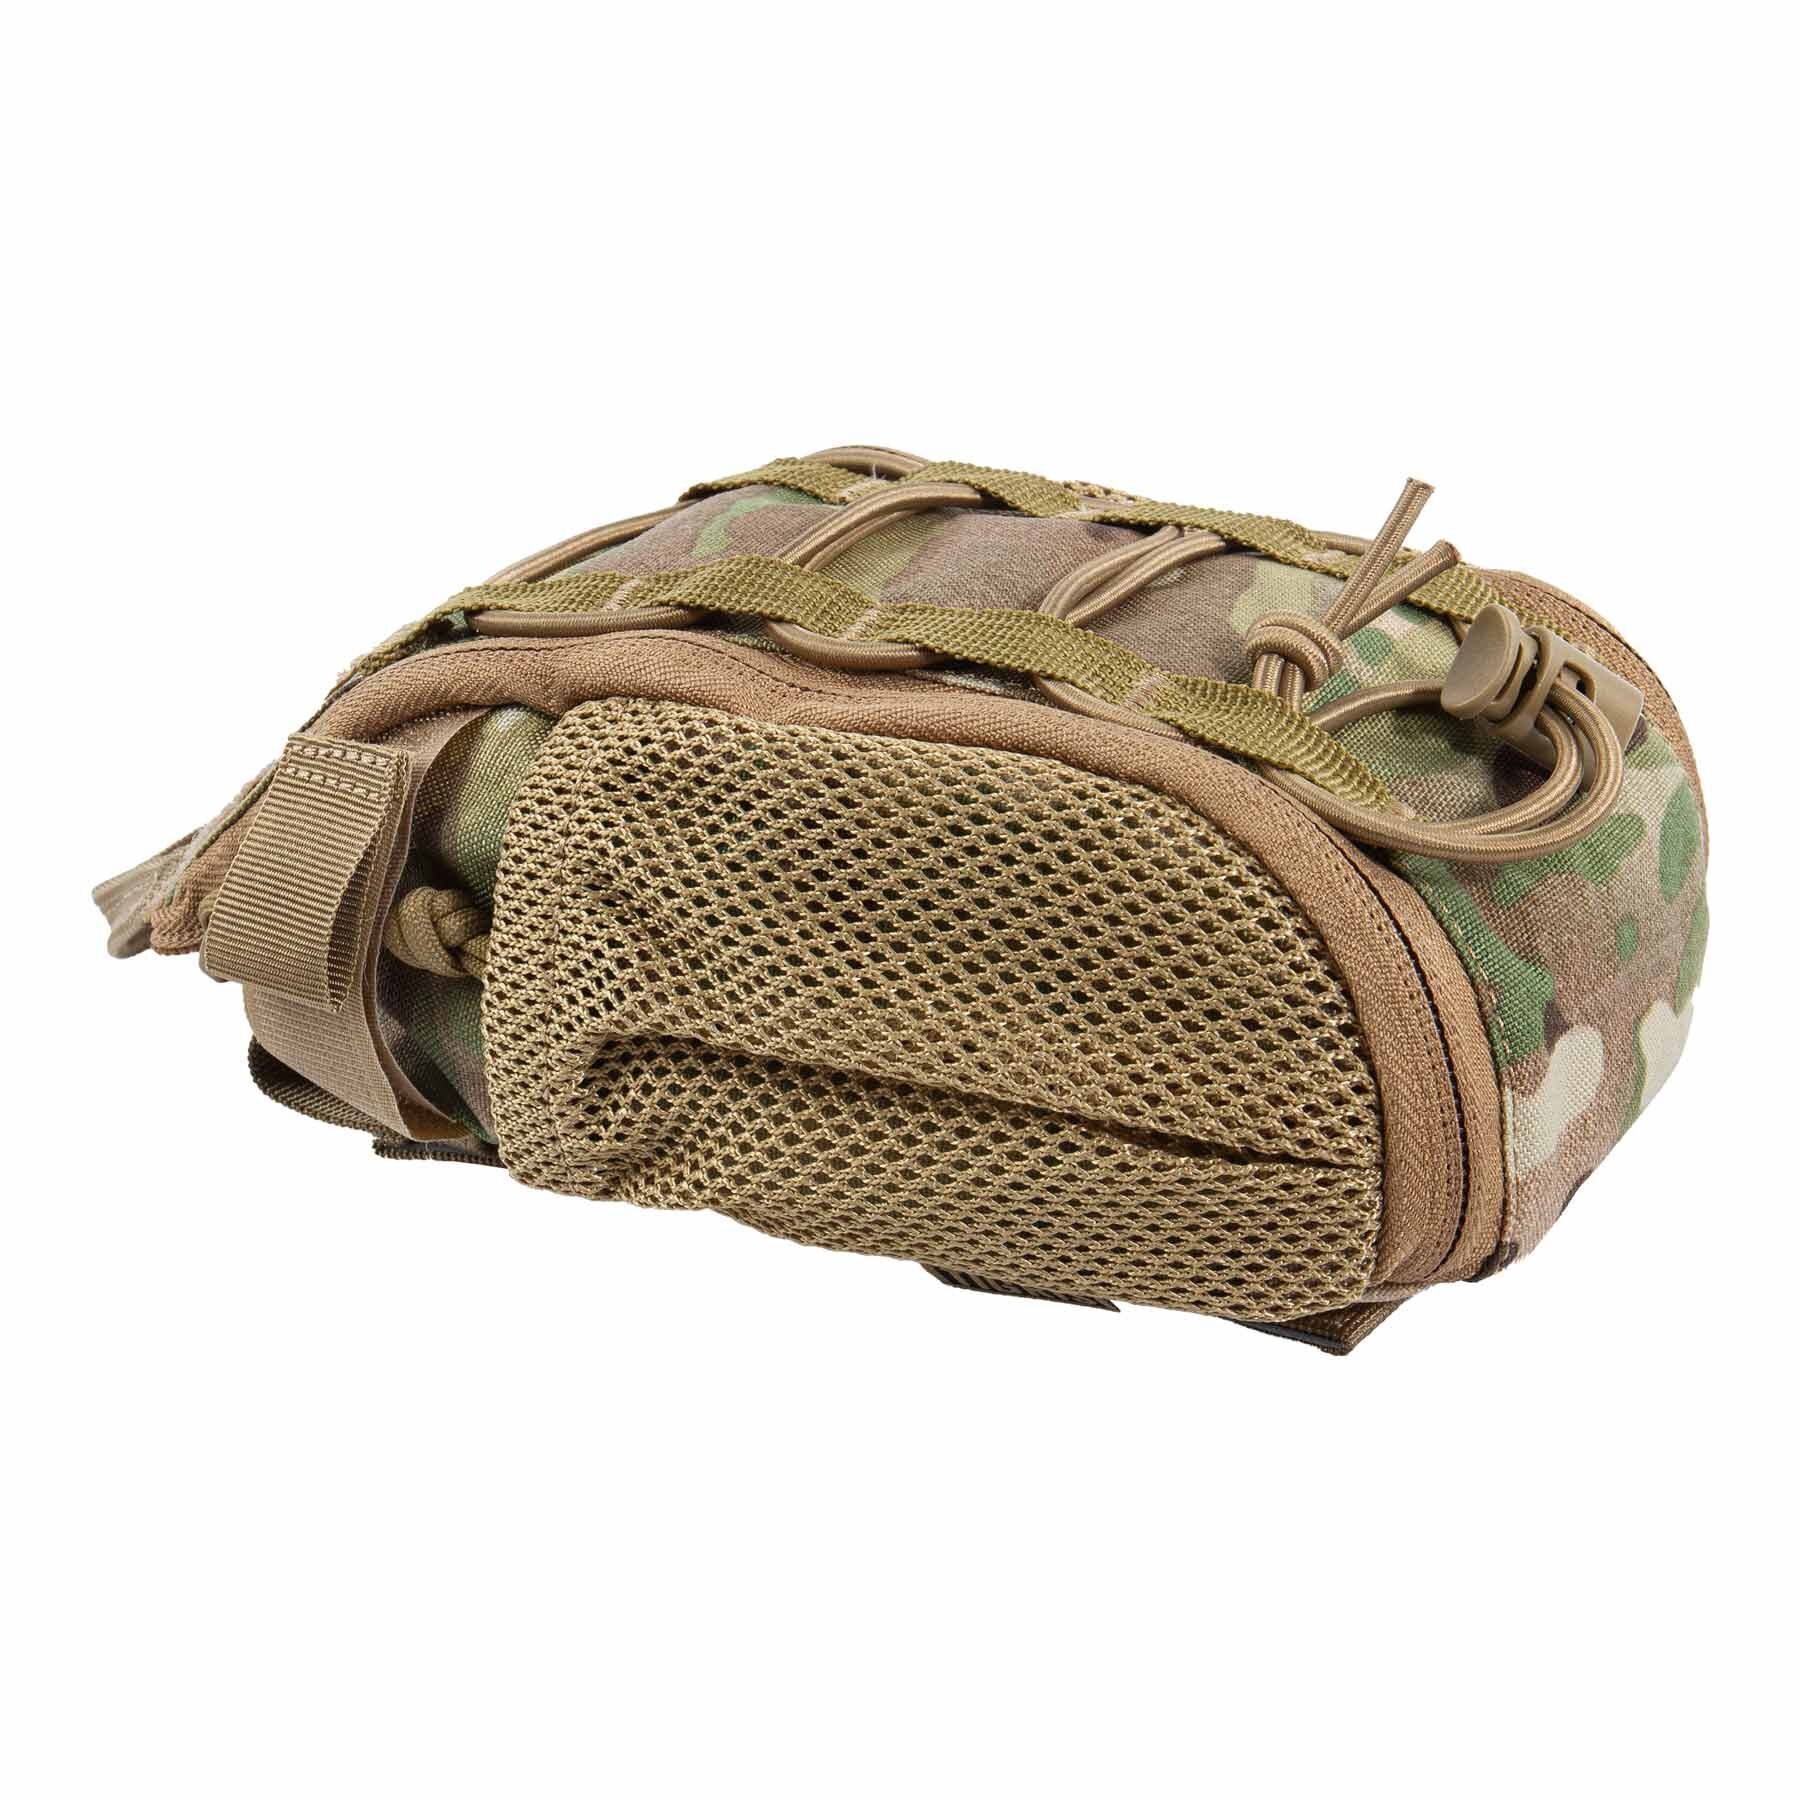 Foxtrot Alpha First Aid Medical Bag, Multicam, Medic Pouches, Pouches /  Magazintasche / Molle, Taktische Ausrüstung, MILITÄRAUSRÜSTUNG